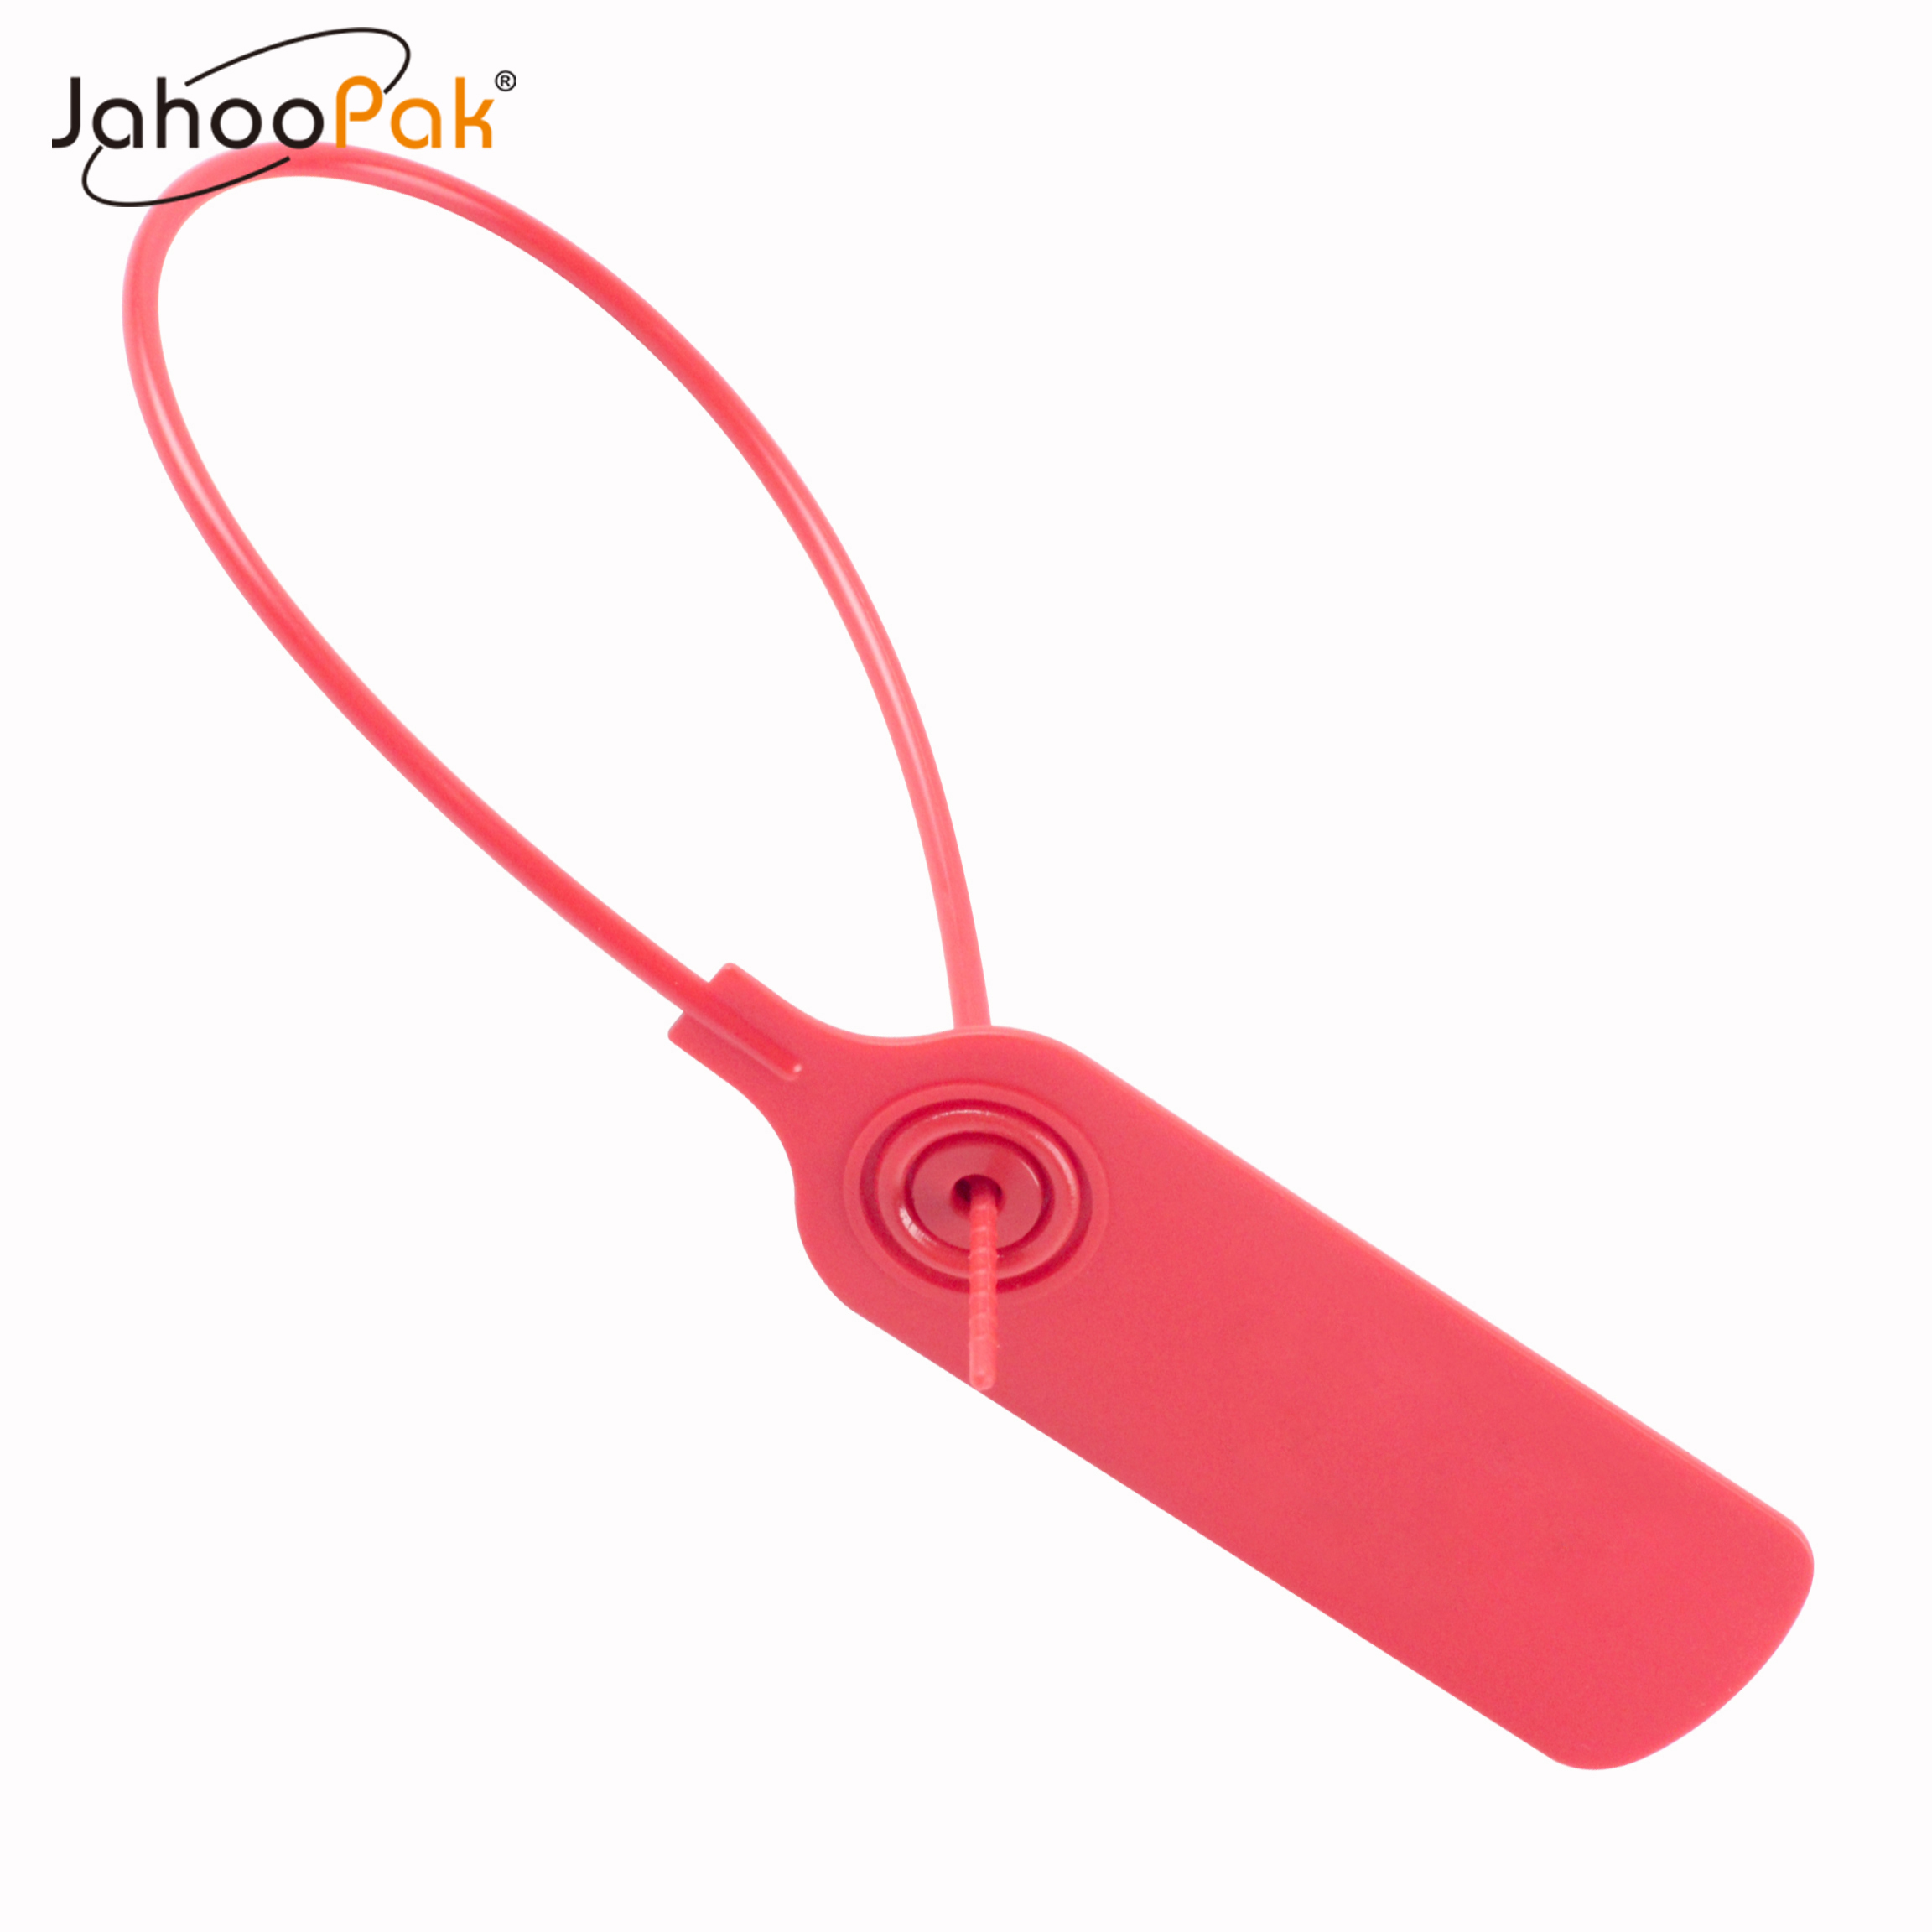 JahooPak Ikirango cya plastiki Ikirango kirambuye (1)